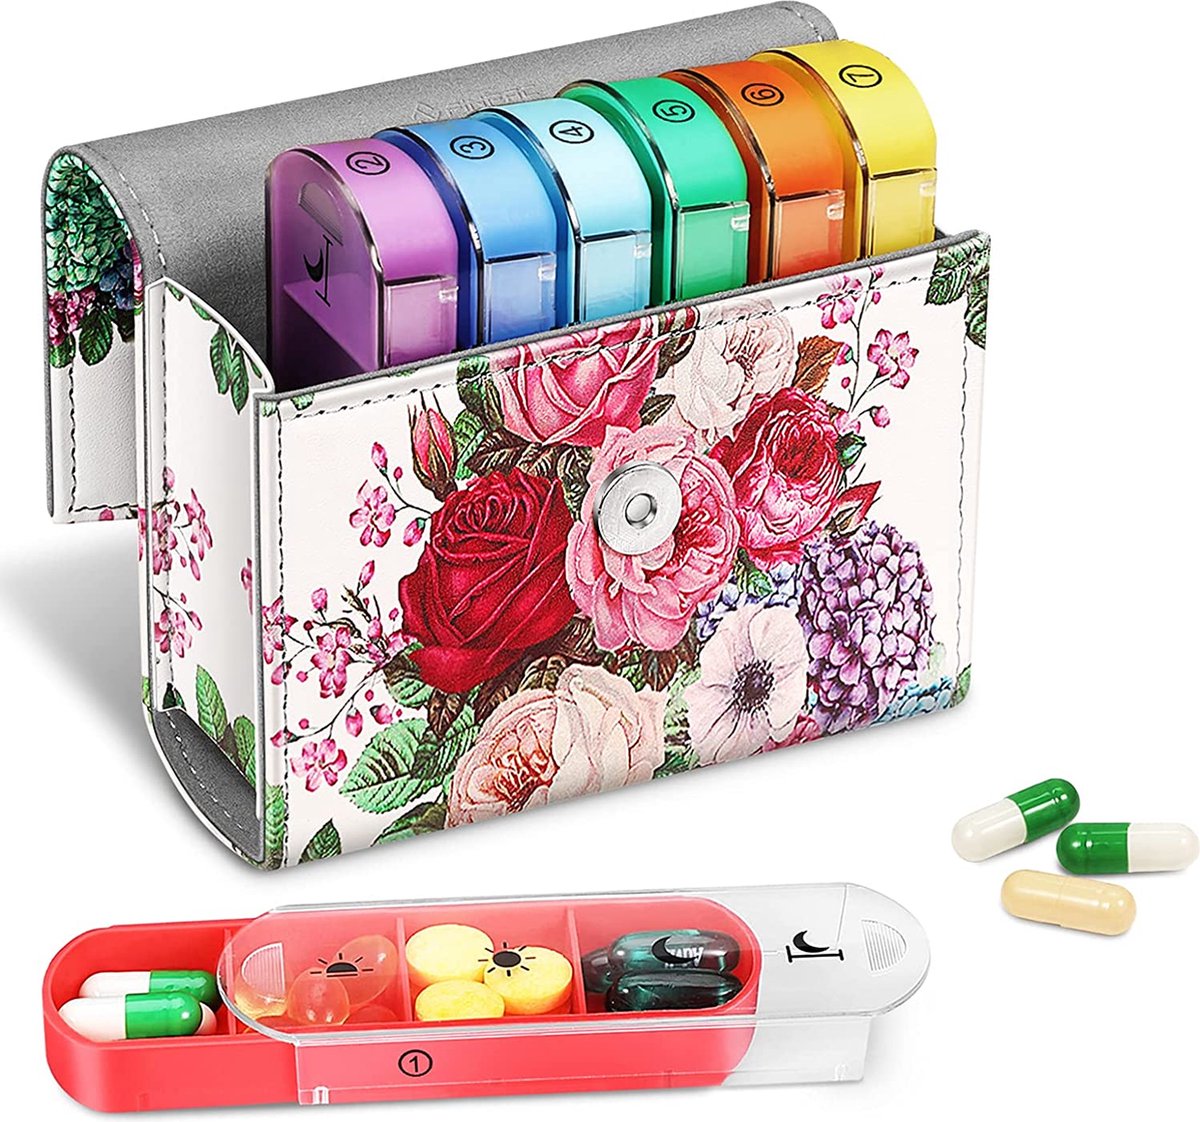 Tablettenbox 7 dagen 4 vakken - pillendoos 4 keer per dag met kunstleren tas en naamkaart medicijnbox voor pillen, vitamine visolie voor 's ochtends 's middags, 's avonds, bloementuin